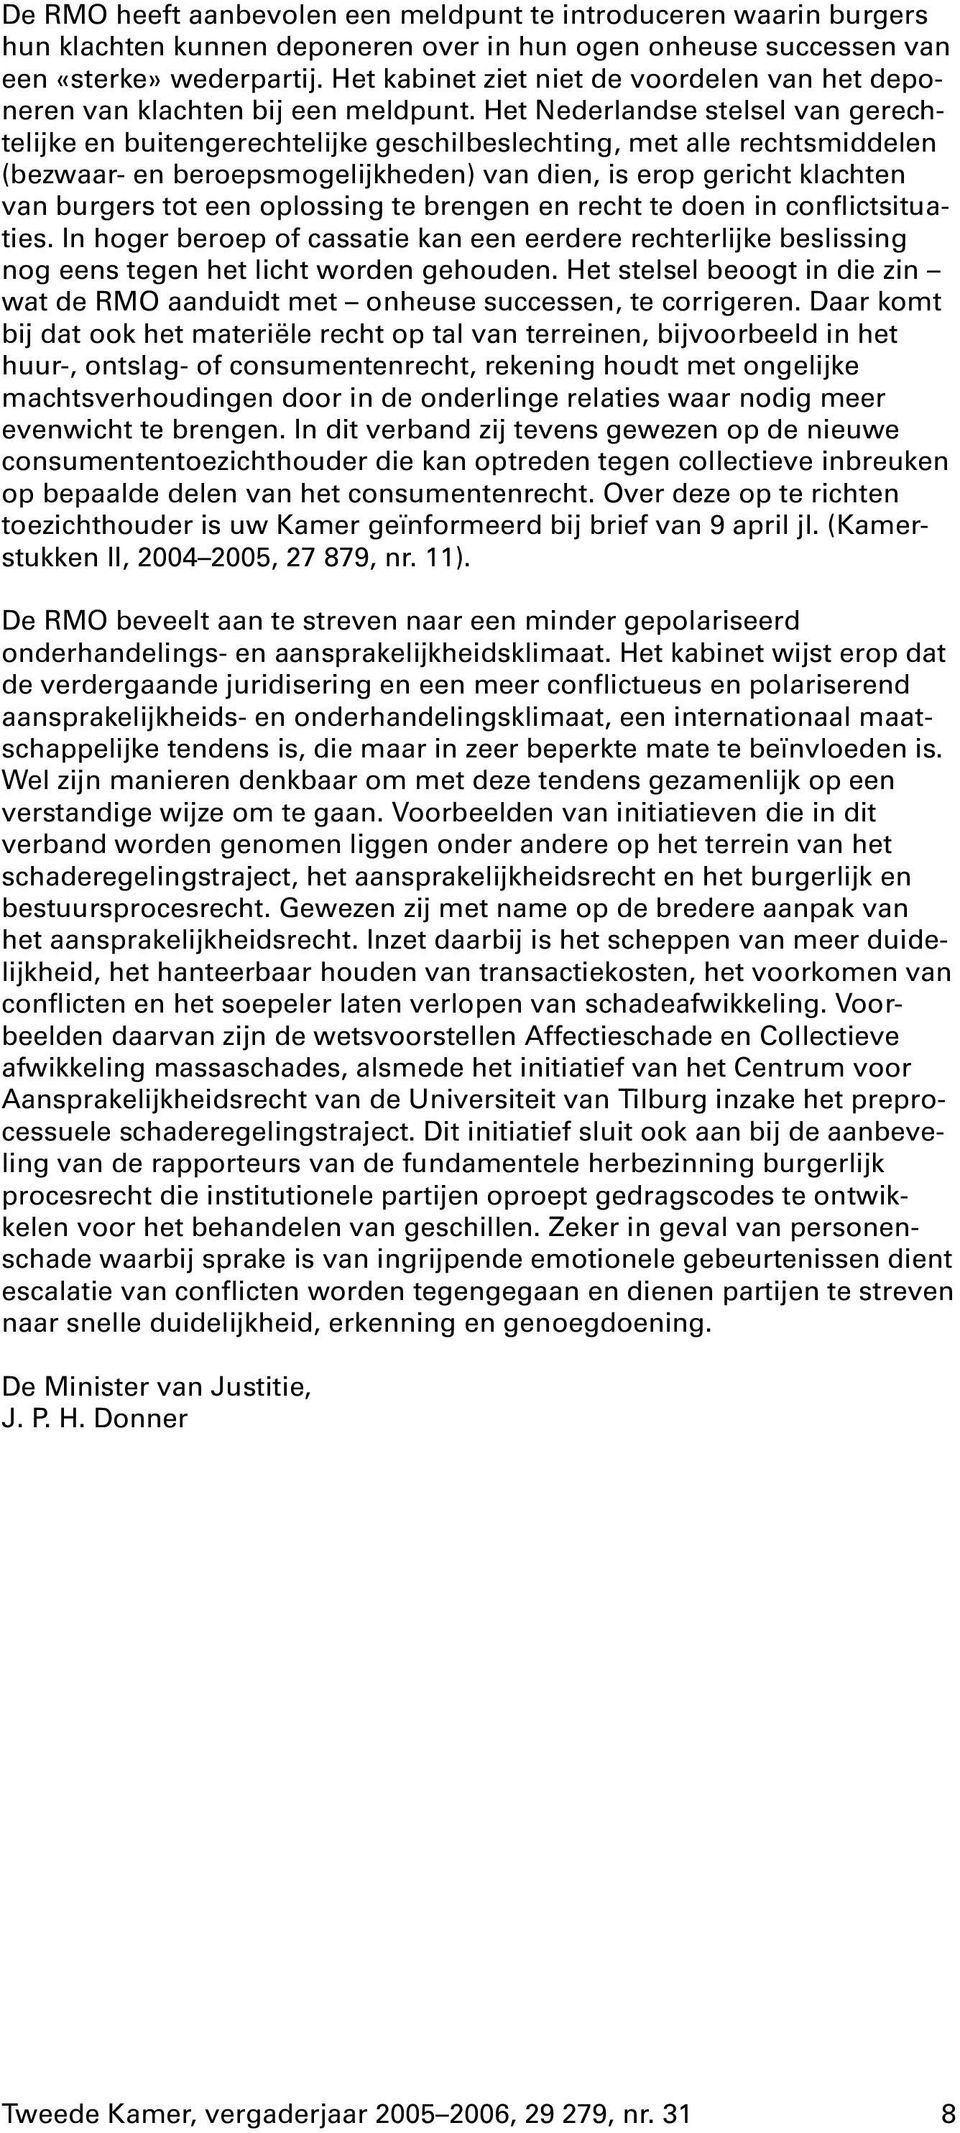 Het Nederlandse stelsel van gerechtelijke en buitengerechtelijke geschilbeslechting, met alle rechtsmiddelen (bezwaar- en beroepsmogelijkheden) van dien, is erop gericht klachten van burgers tot een